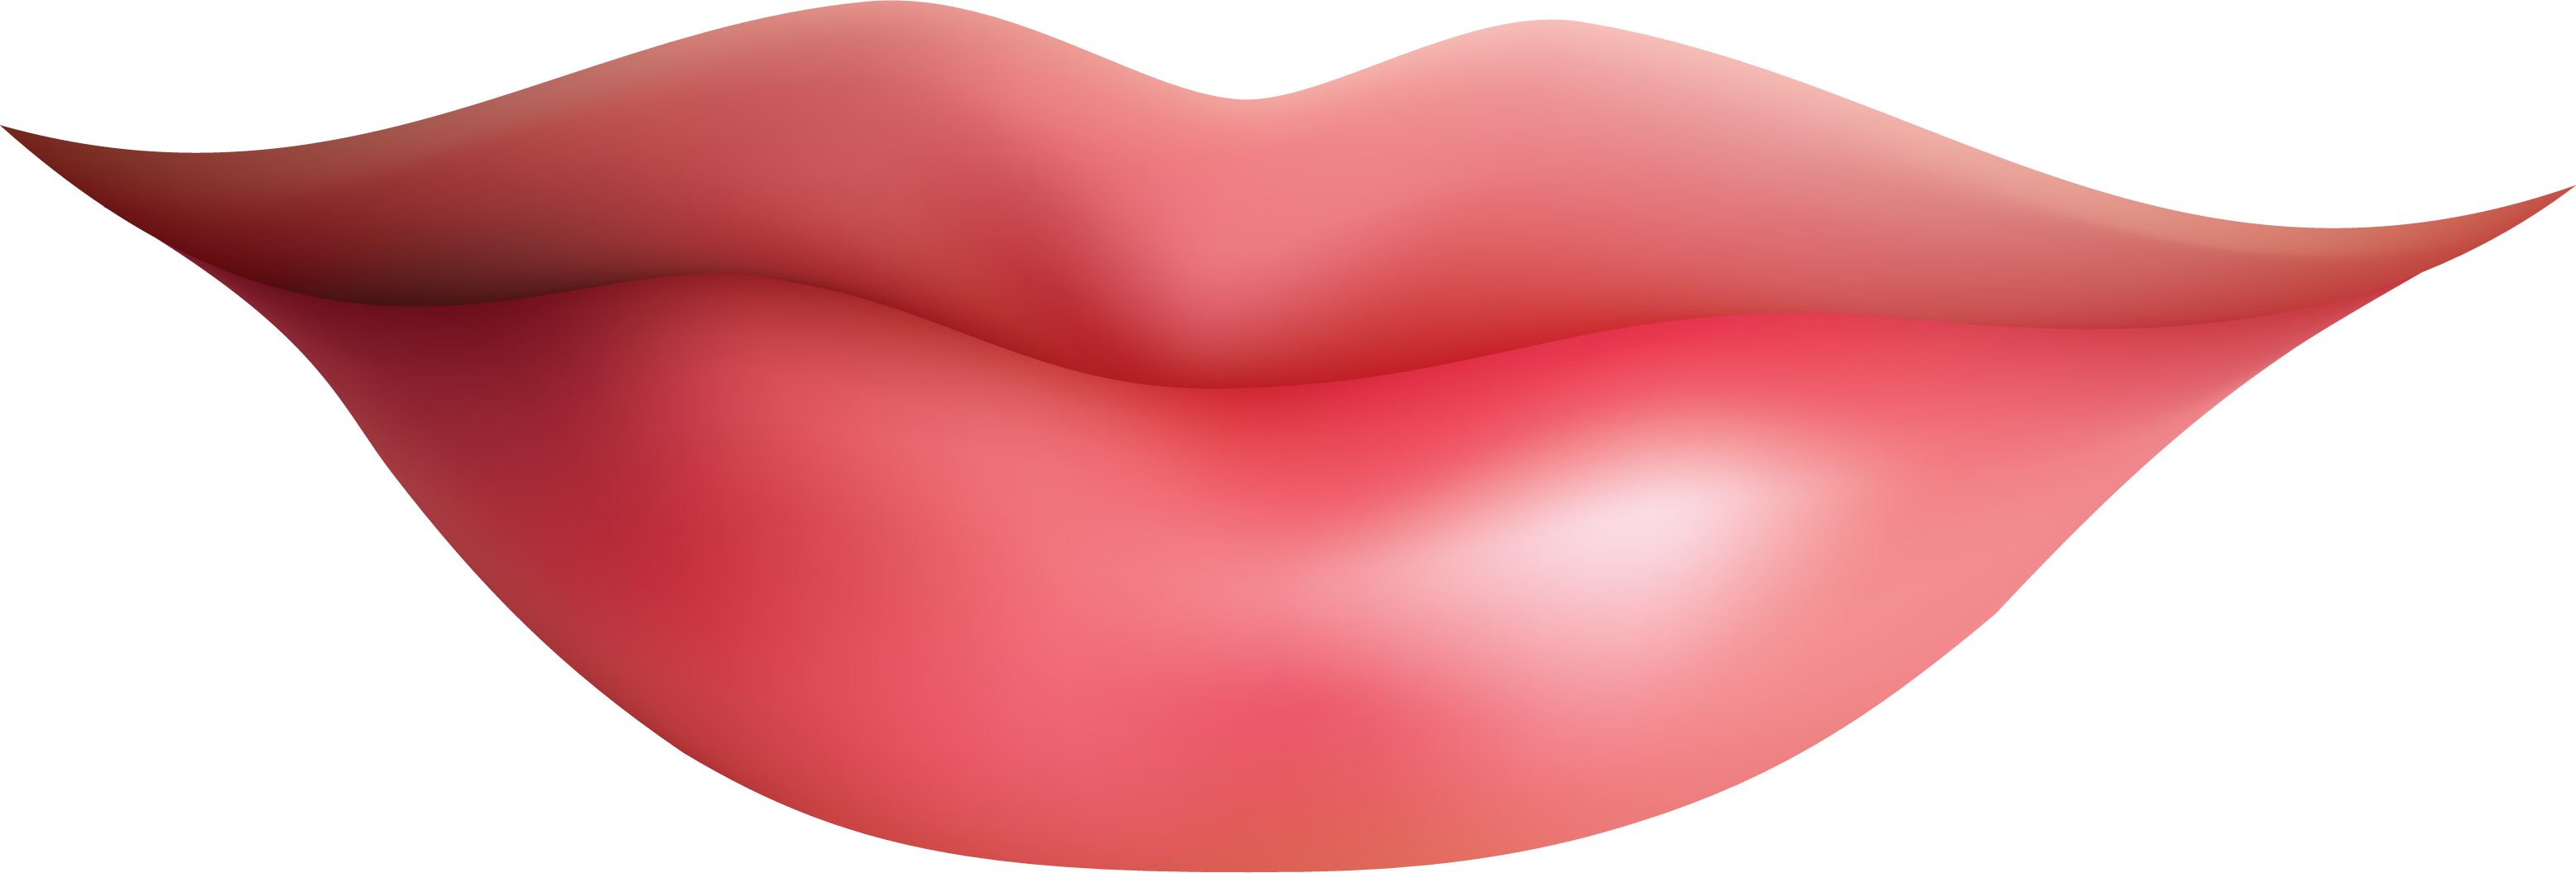 lip clipart